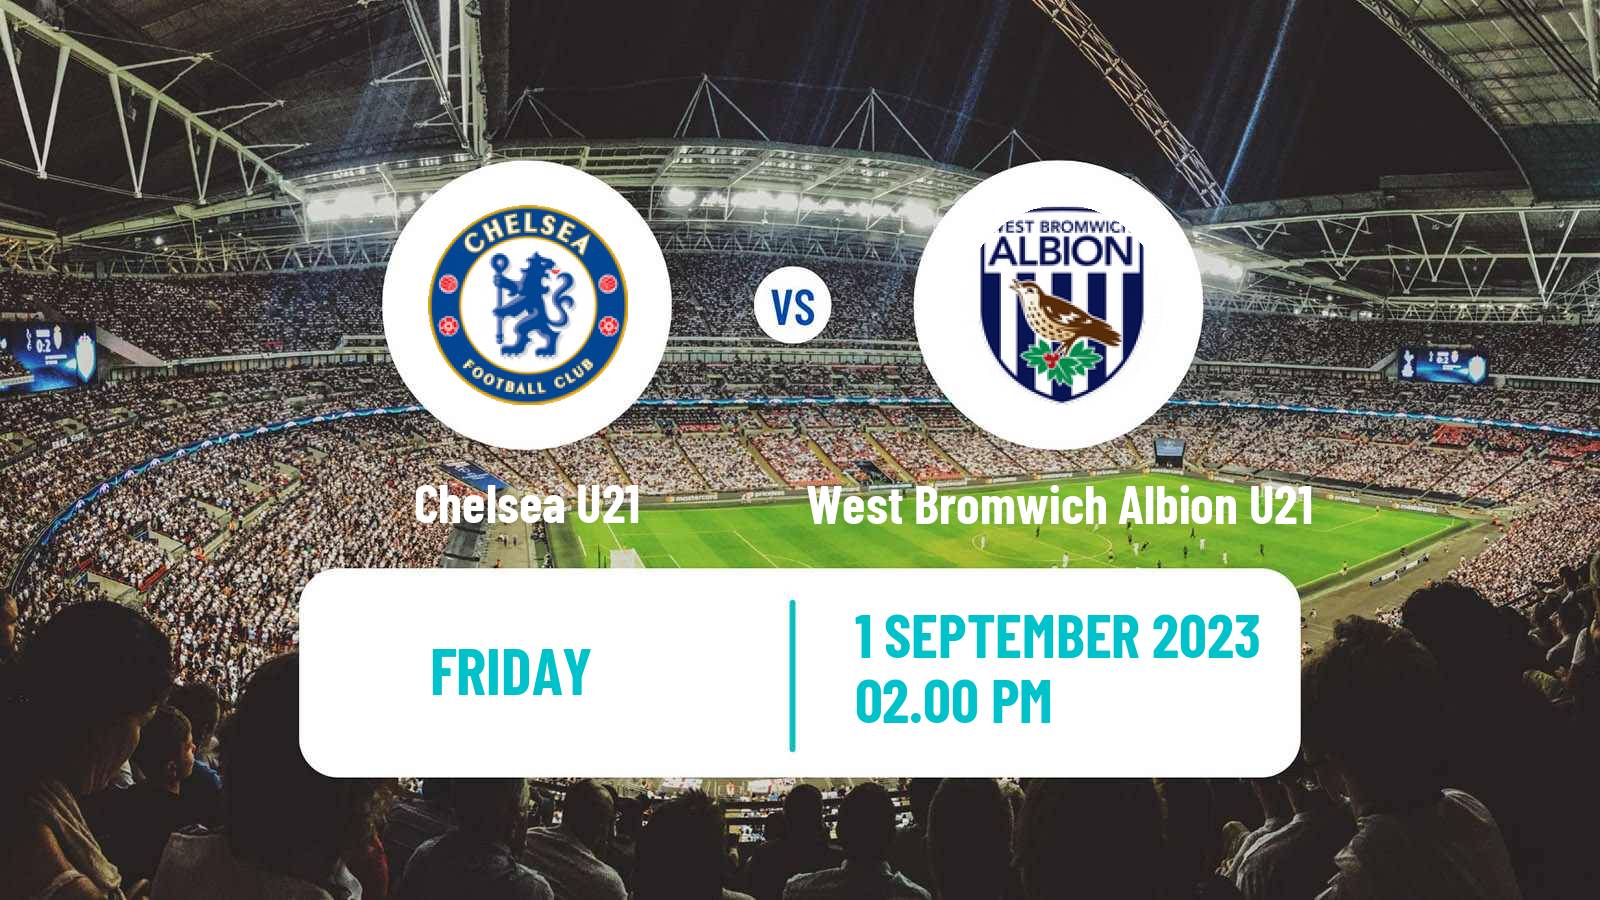 Soccer English Premier League 2 Chelsea U21 - West Bromwich Albion U21